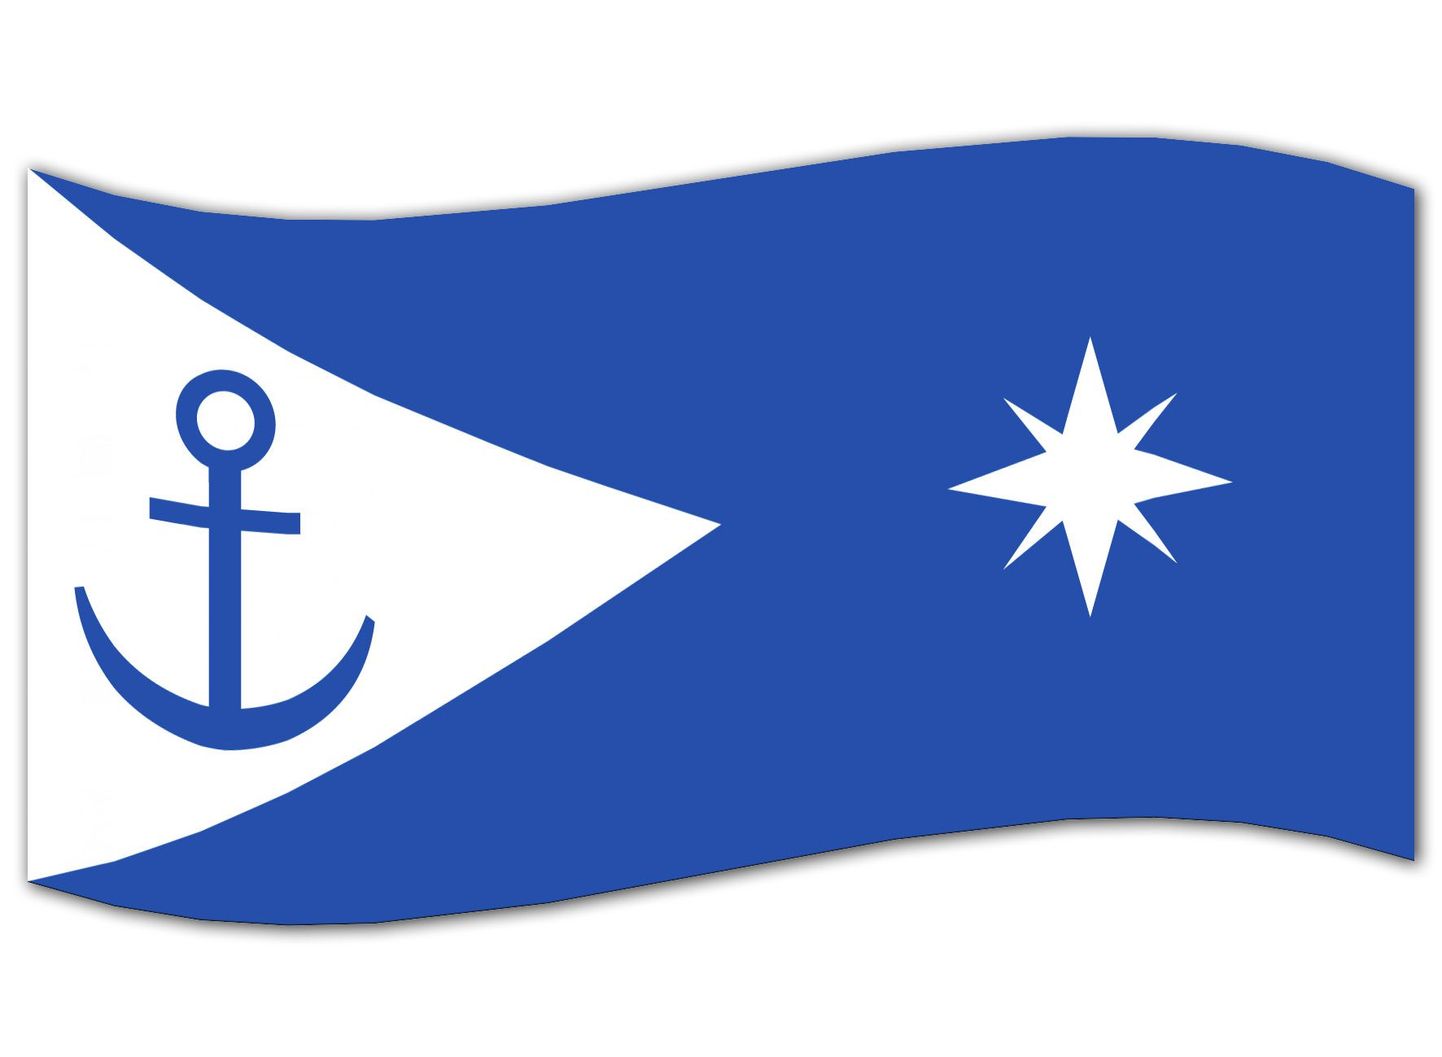 Põhja-Tallinna lipp.